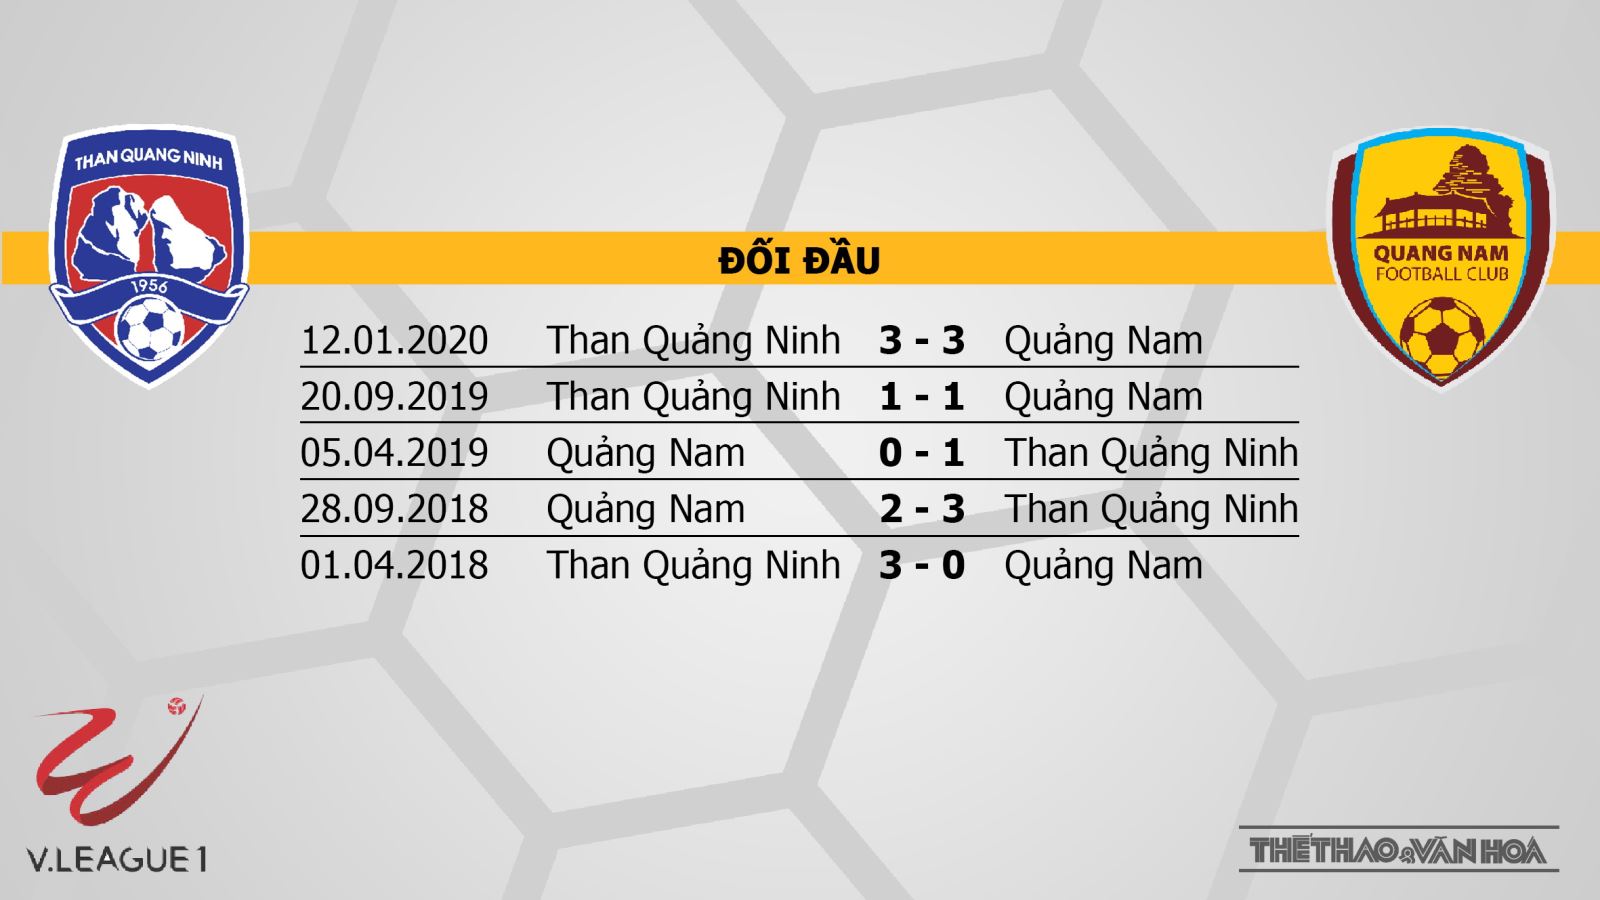 Than Quảng Ninh - Quảng Nam, Than Quảng Ninh, Quảng Nam, trực tiếp bóng đá, bong da, nhận định bóng đá bóng đá, dự đoán, nhận định, V-League